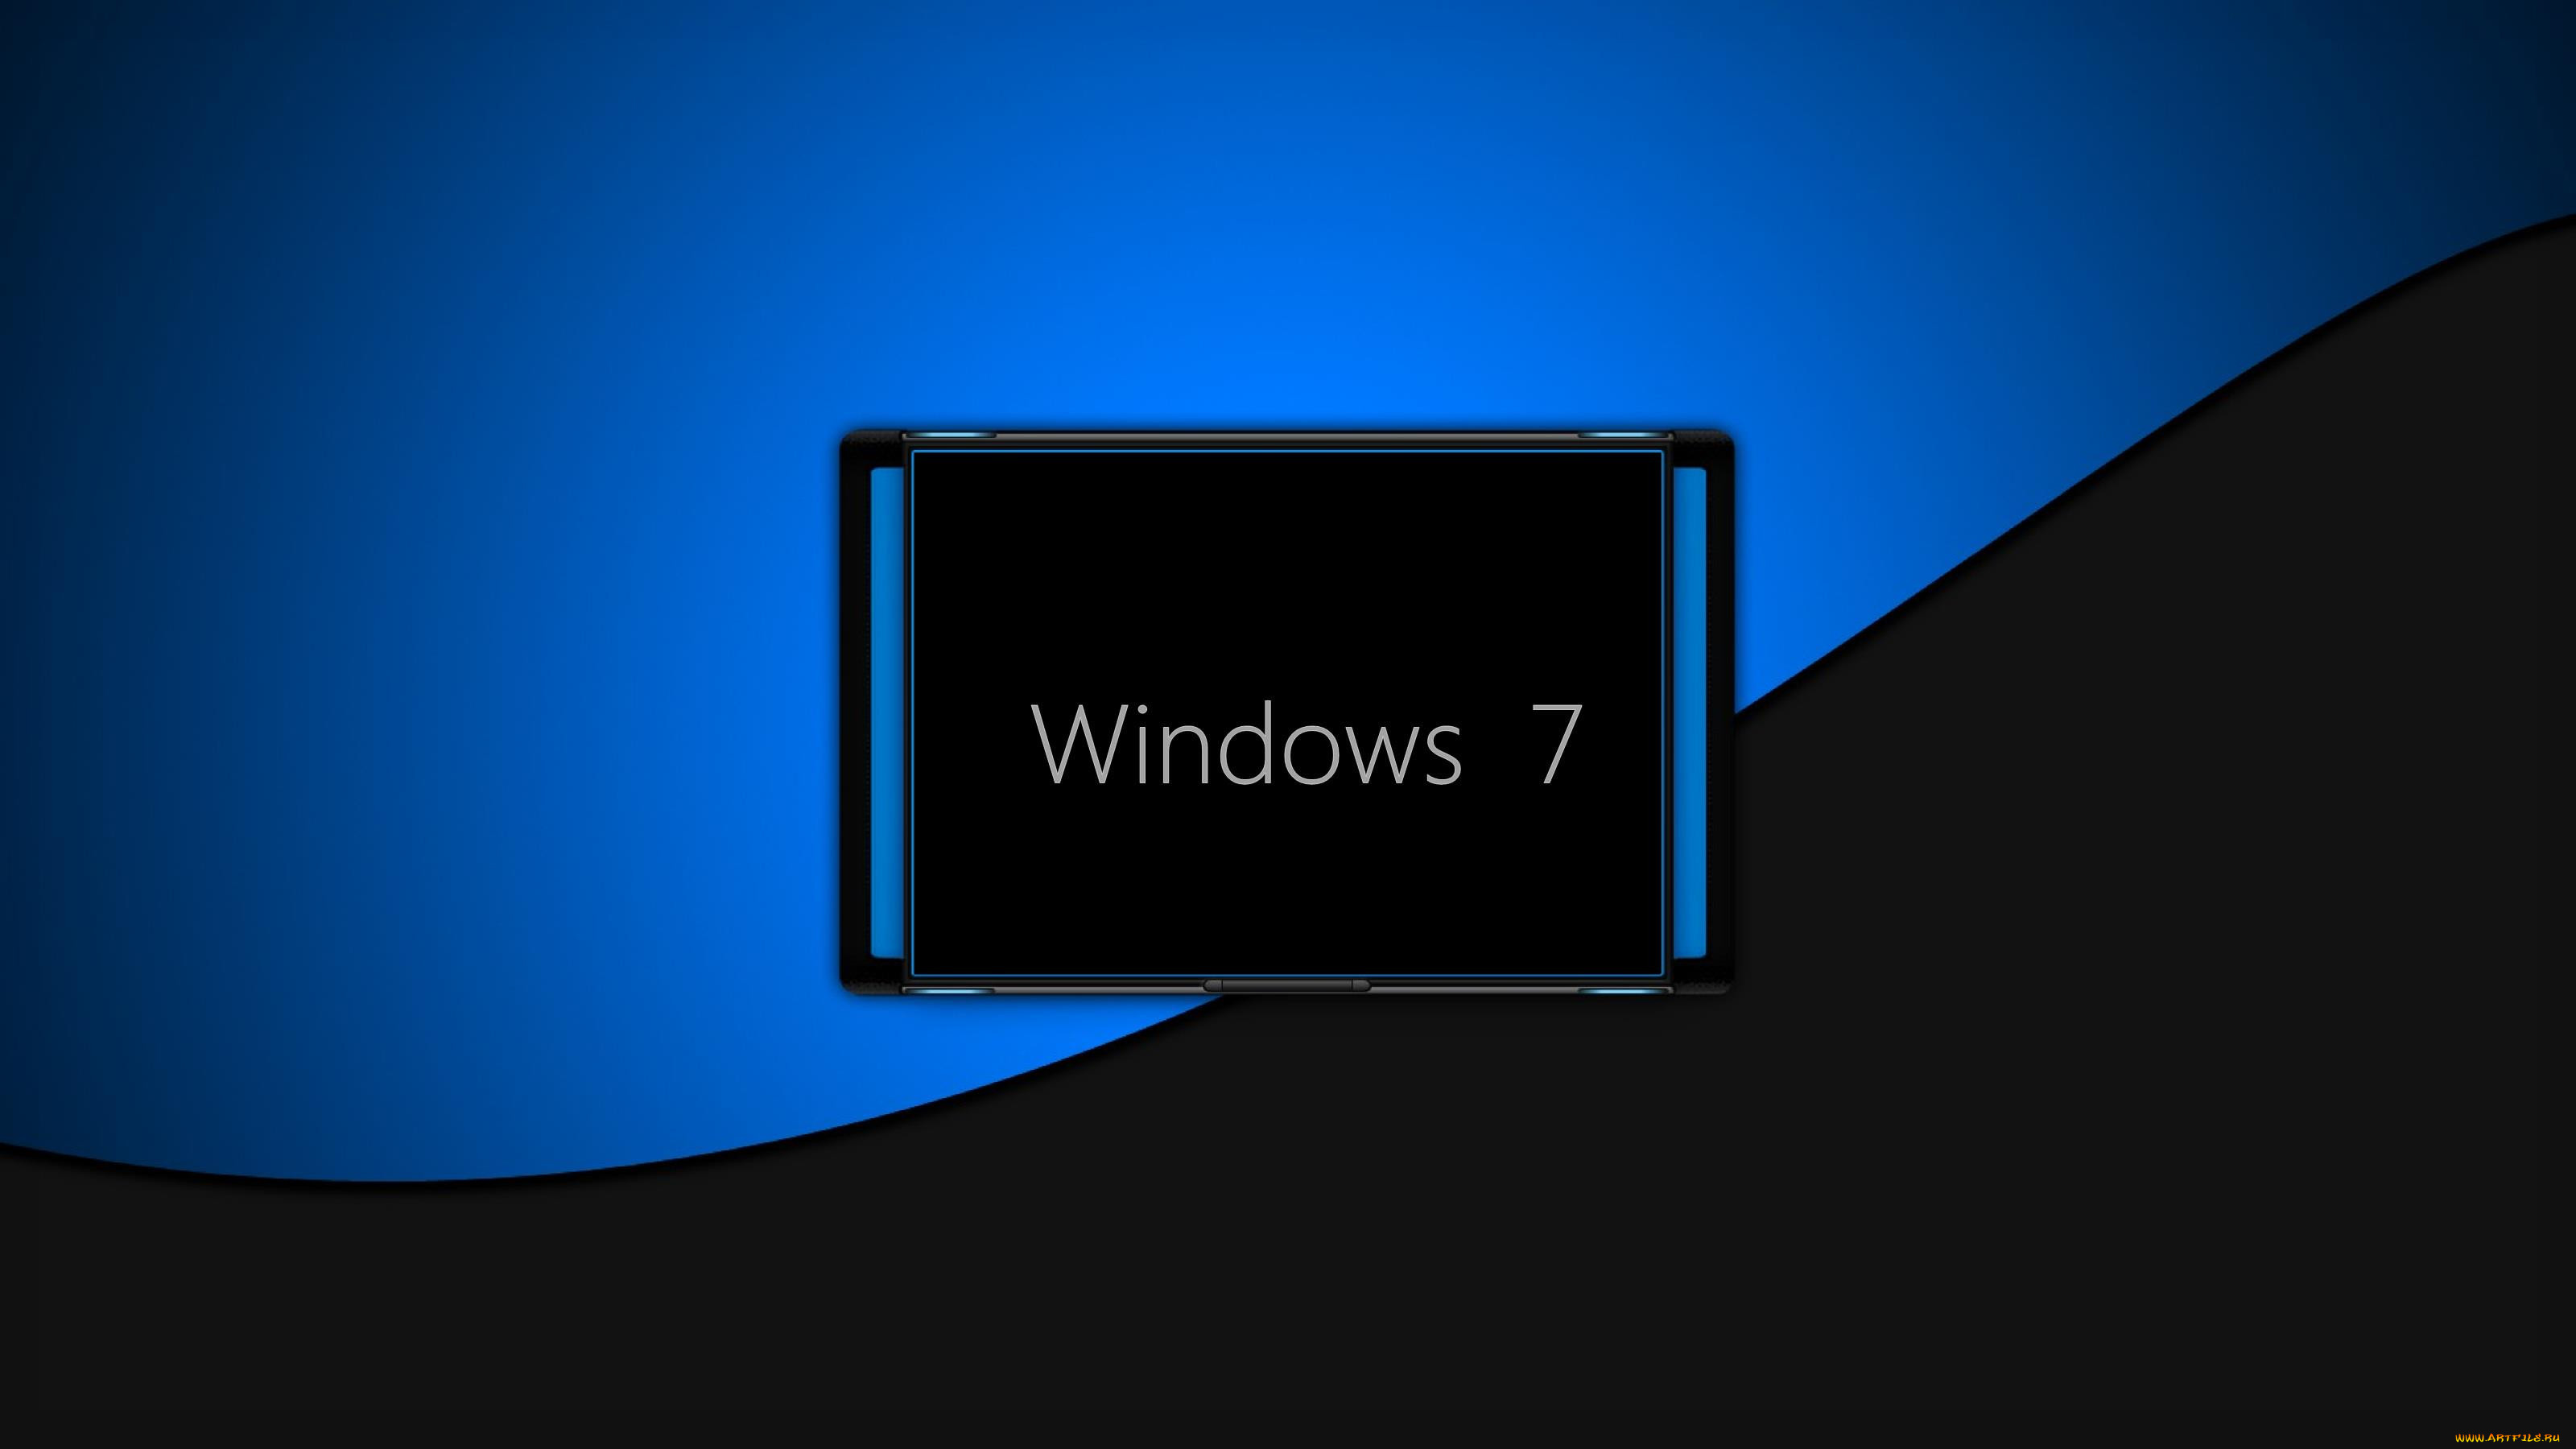 Без экрана приветствия. Фон приветствия Windows 7. Экран виндовс. Фон экрана приветствия Windows 7. Экран виндовс 10.